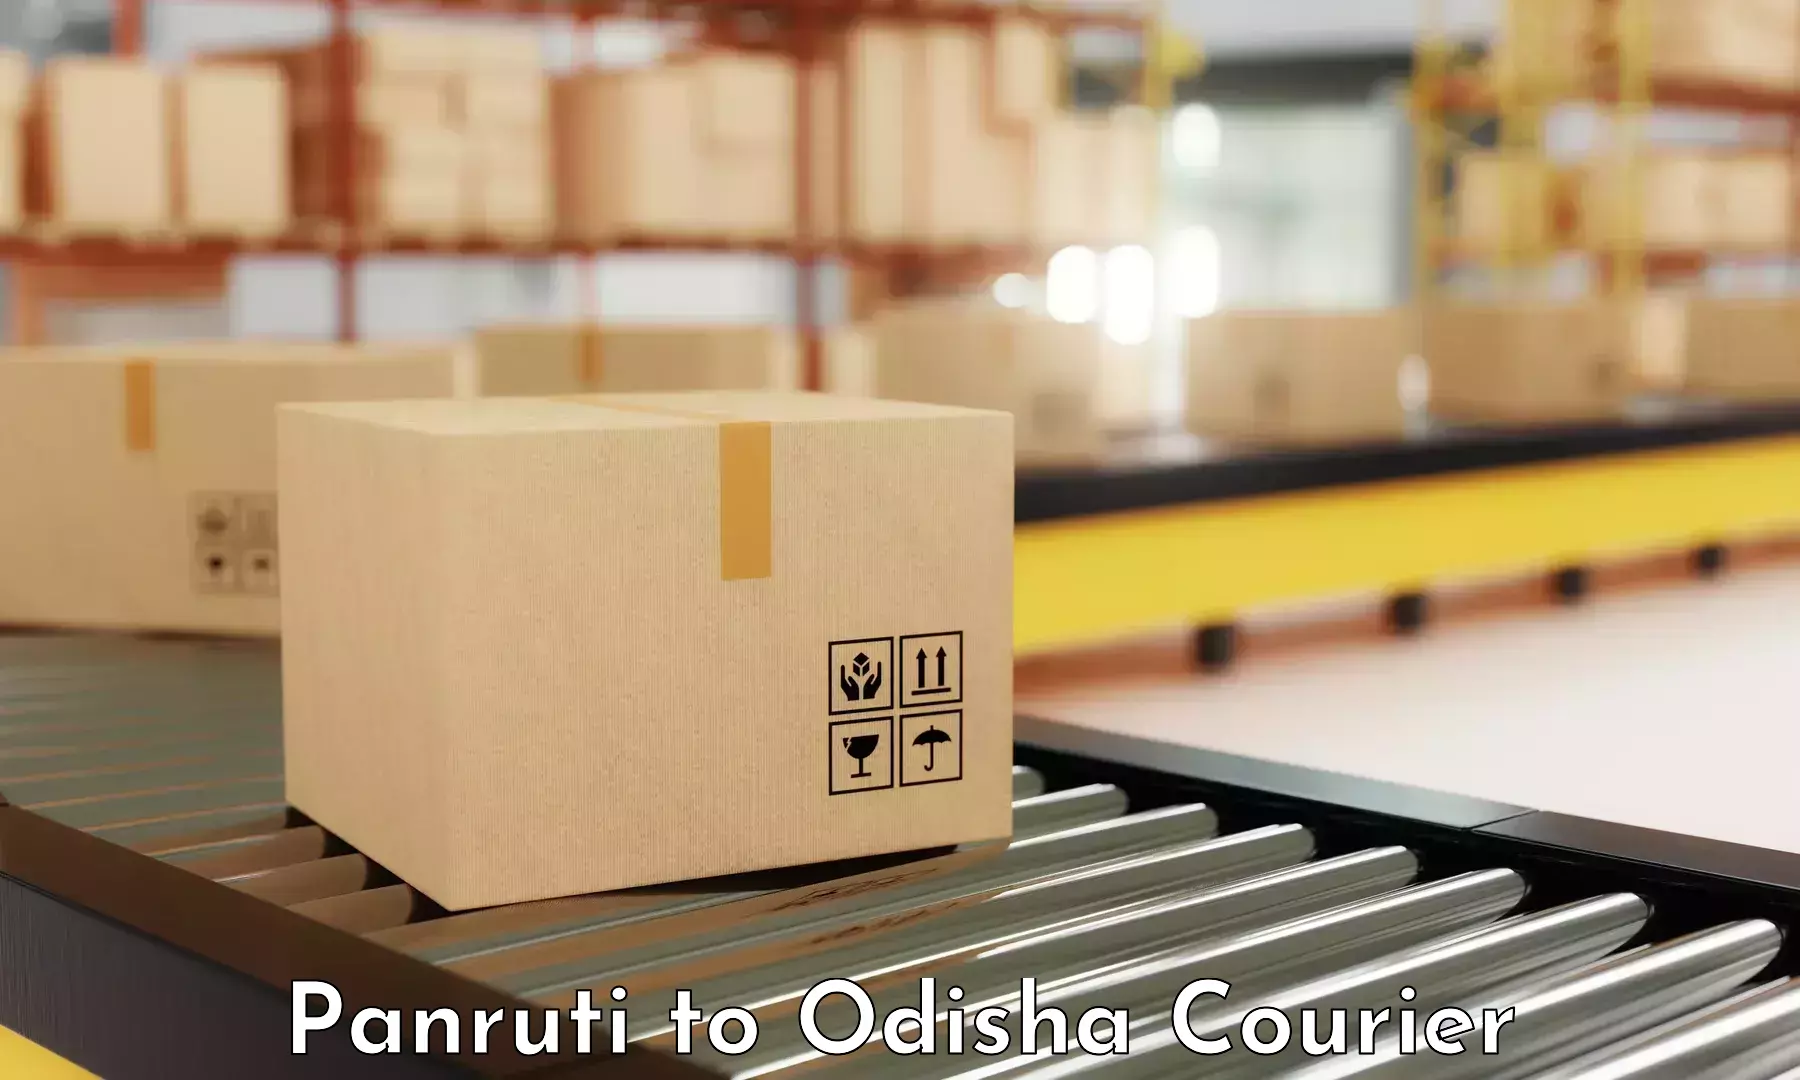 On-demand shipping options Panruti to Loisingha